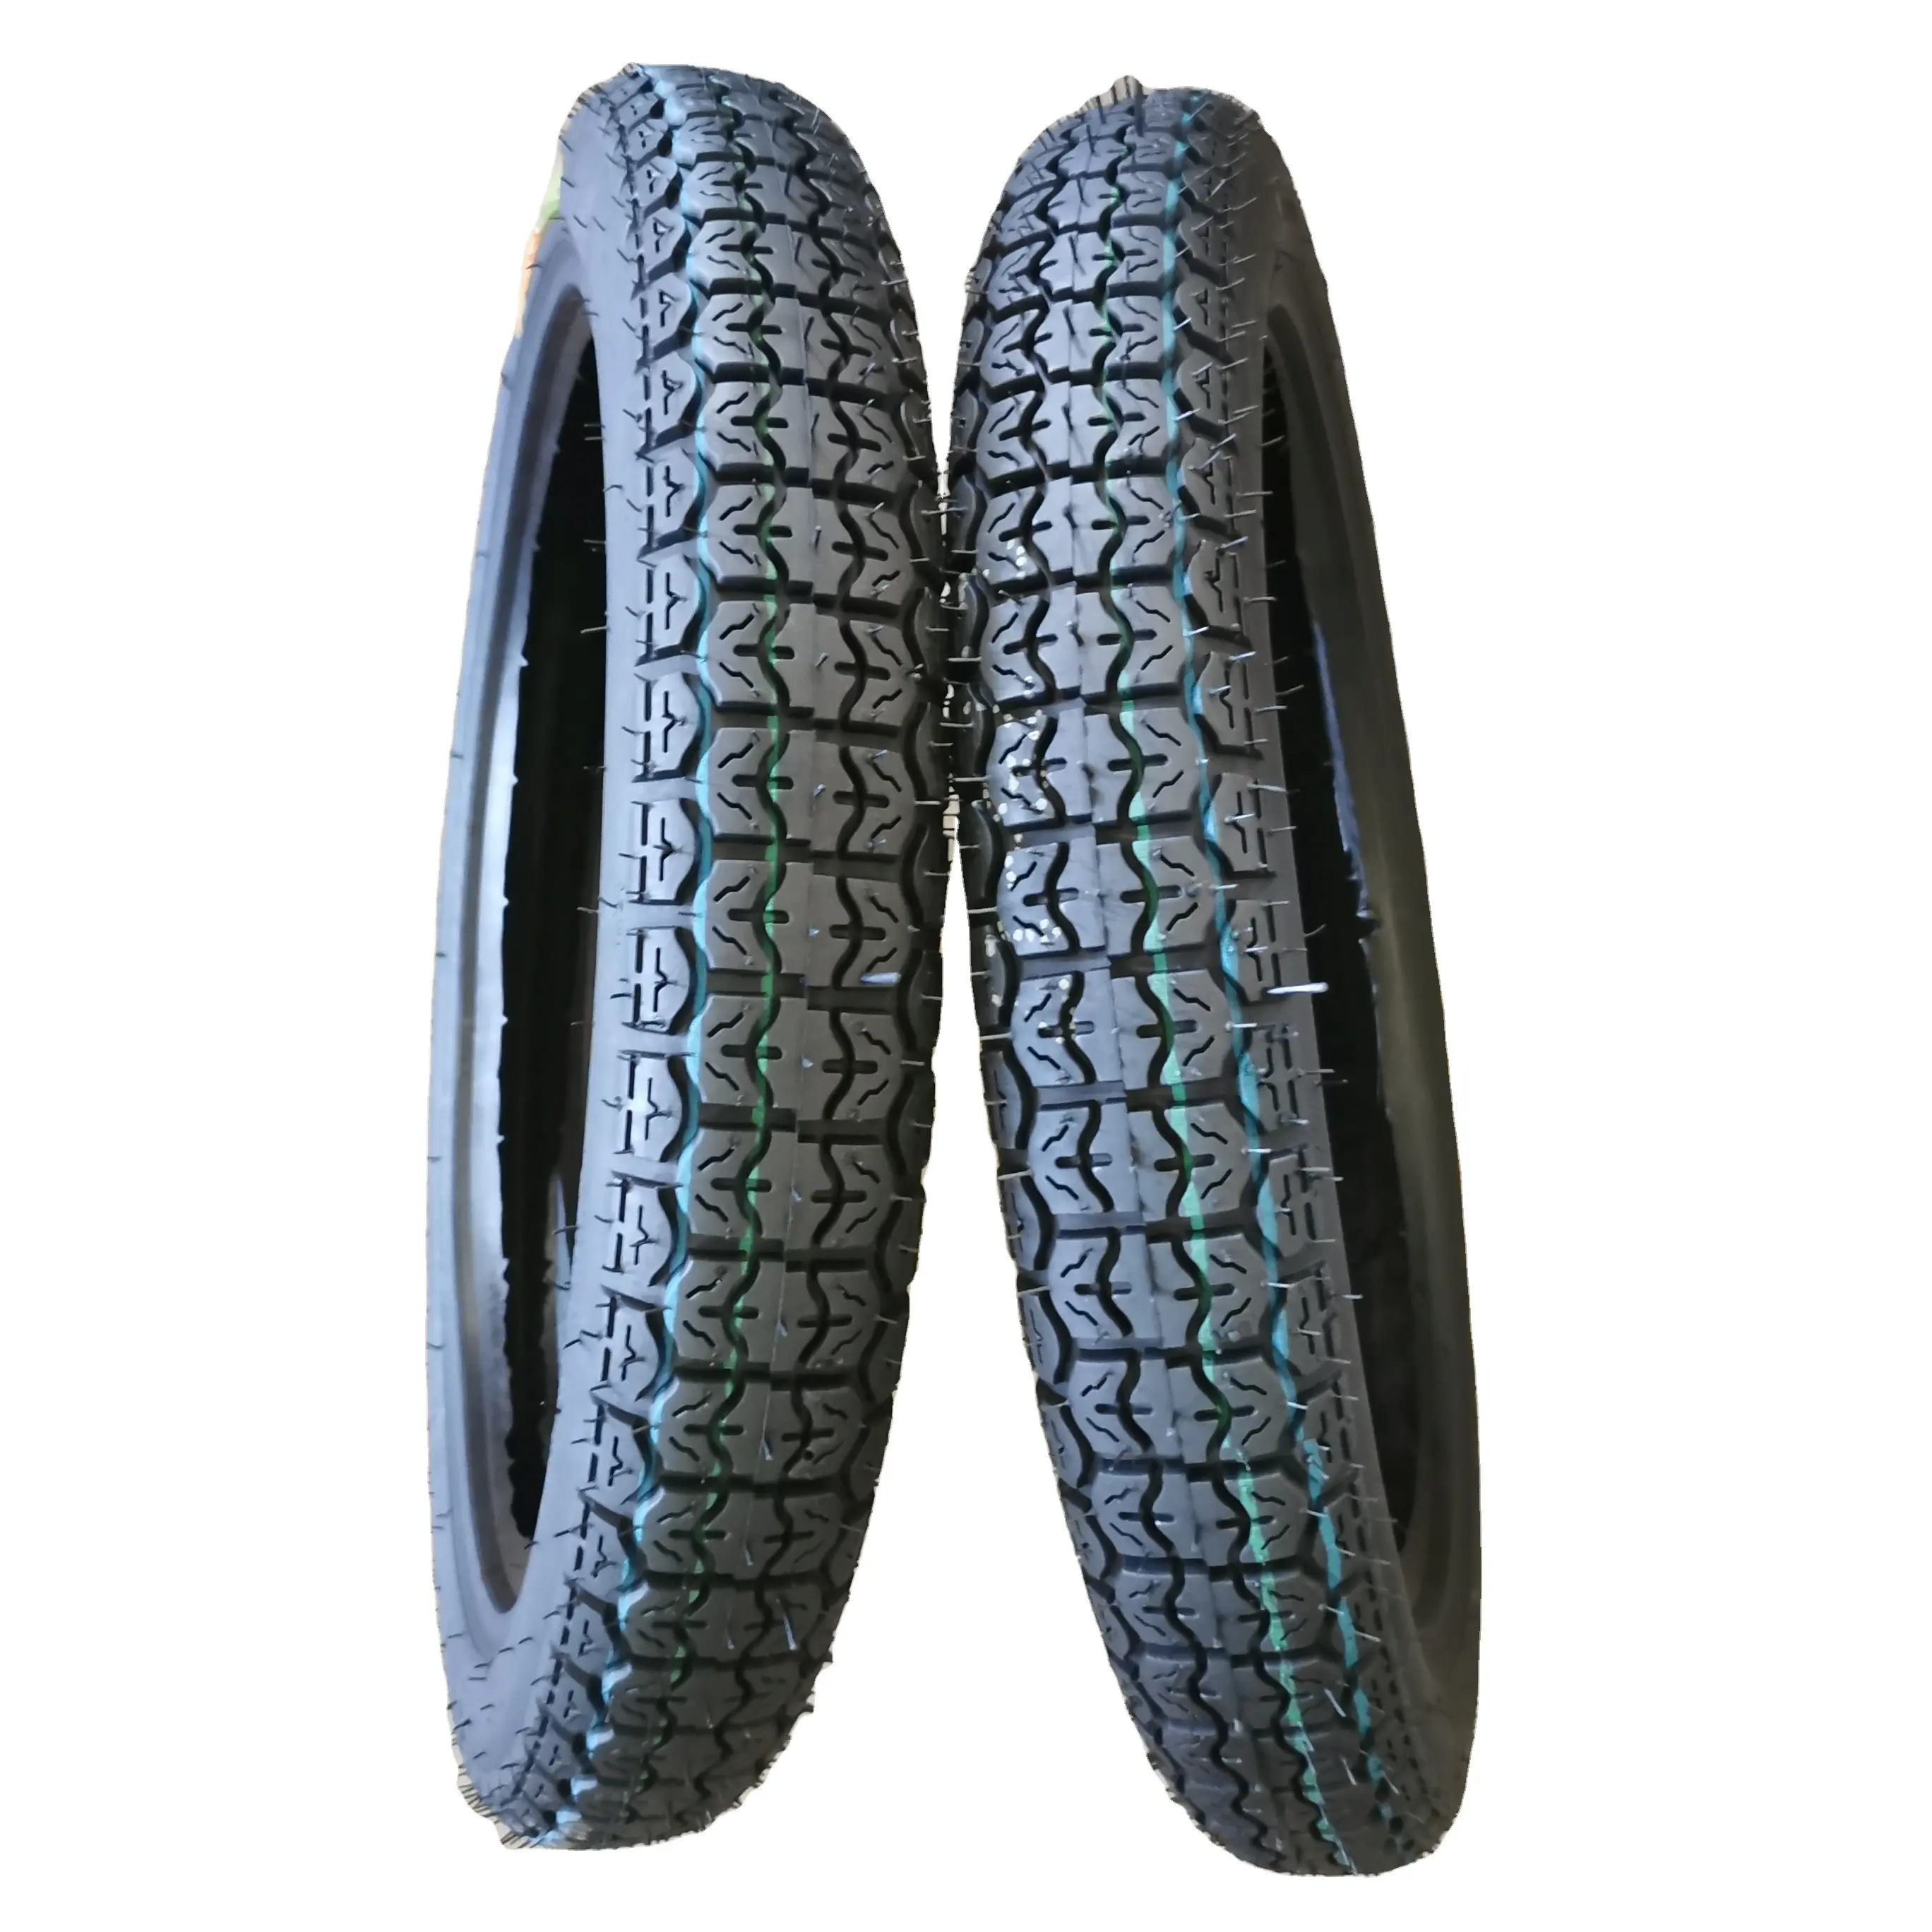 Neumáticos de goma de motocicleta 12 17 18 pulgadas neumáticos de motocicleta 2,75-18 410-18 275-18 300-18 neumáticos